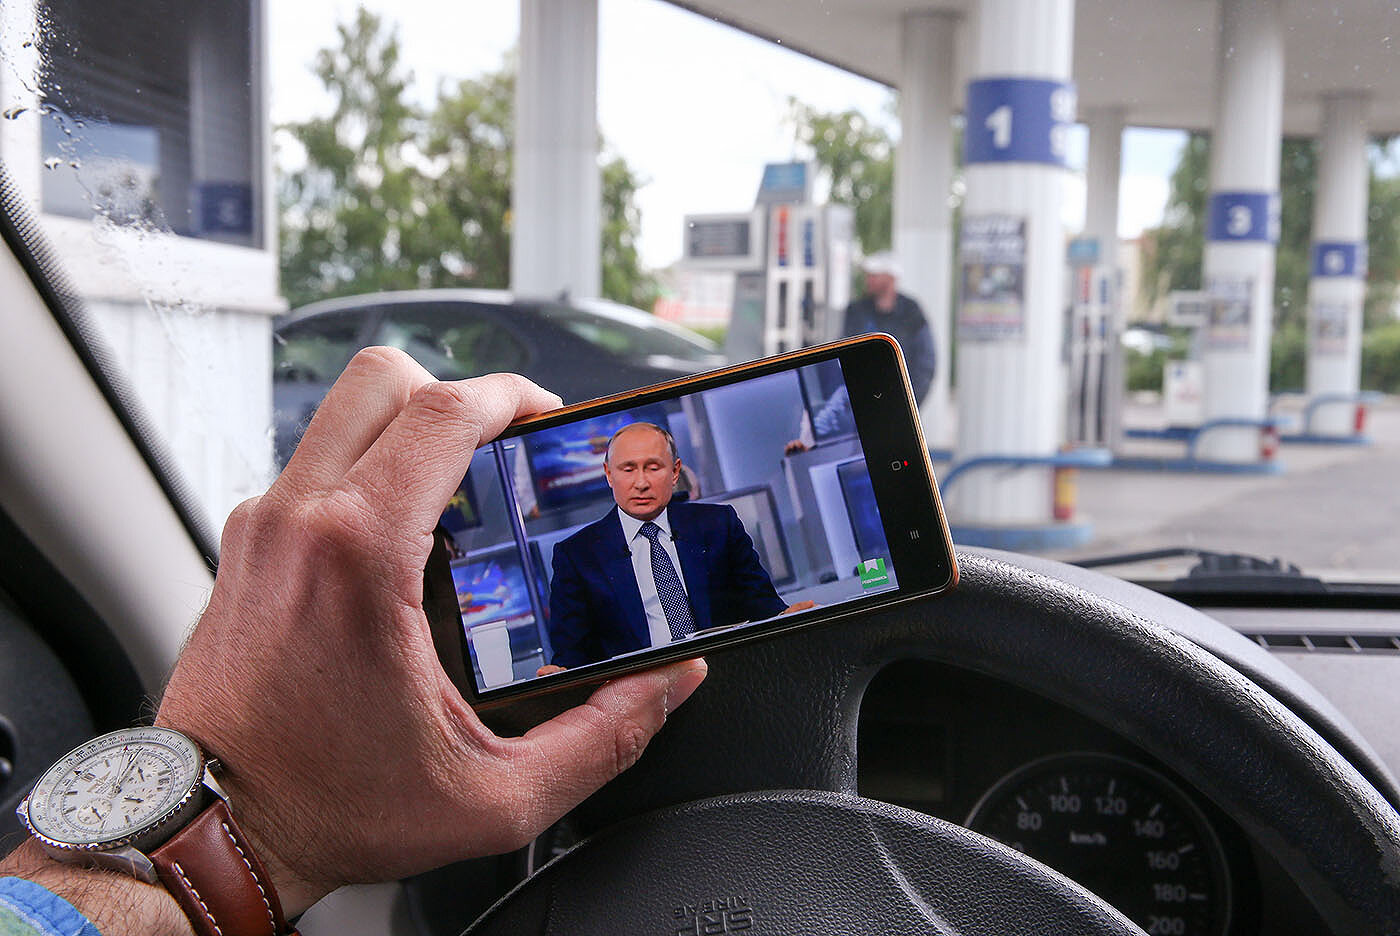 <p>Рязань, 2018 год. Мужчина наблюдает за трансляцией на автозаправке</p>